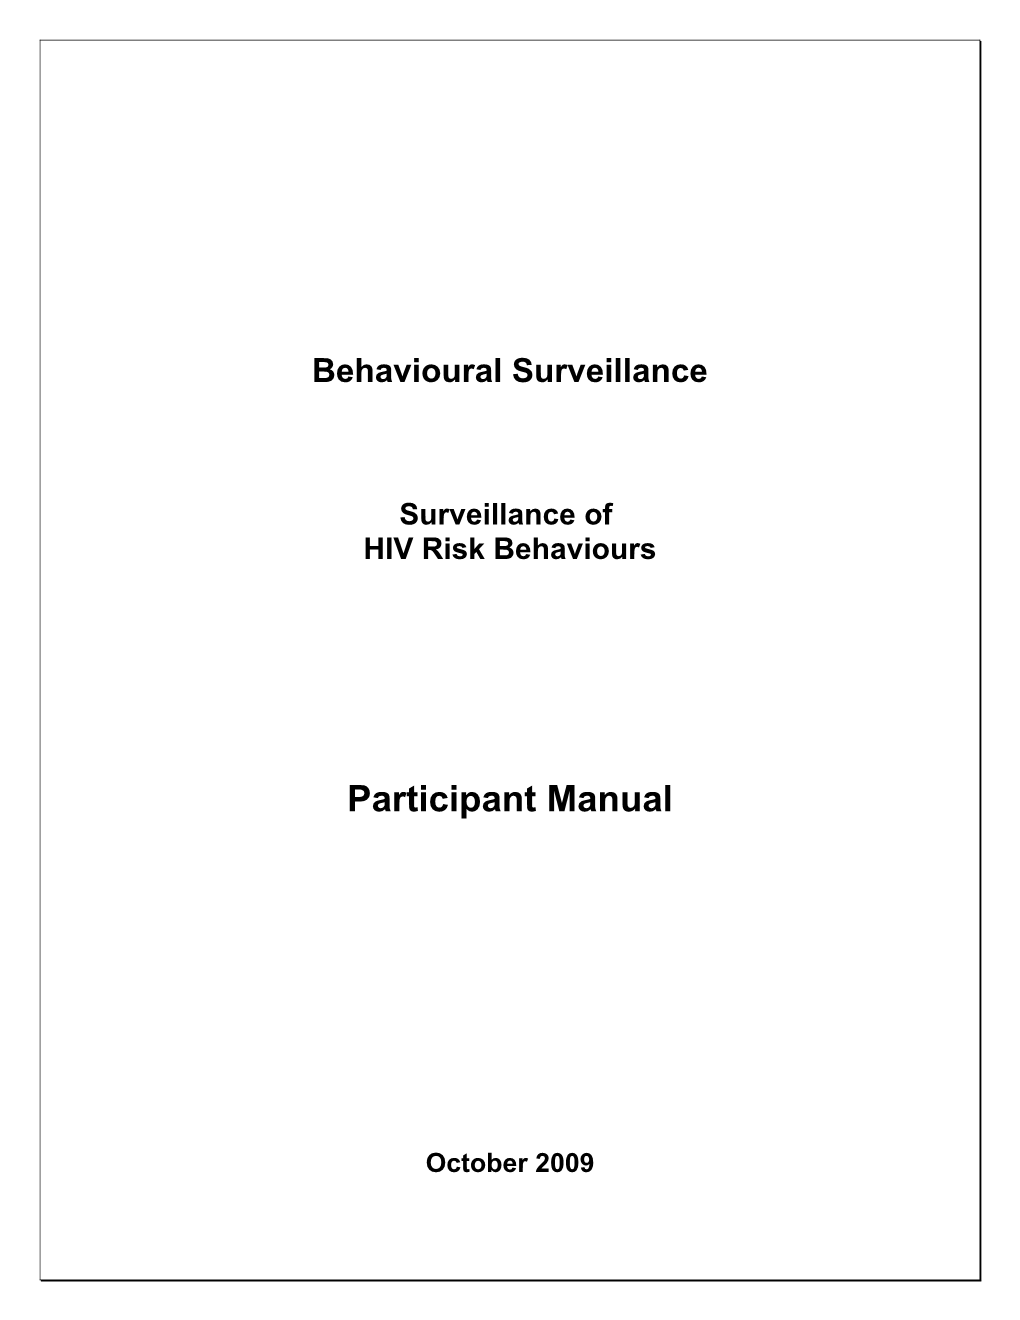 Module 5: Behavioral Surveillance